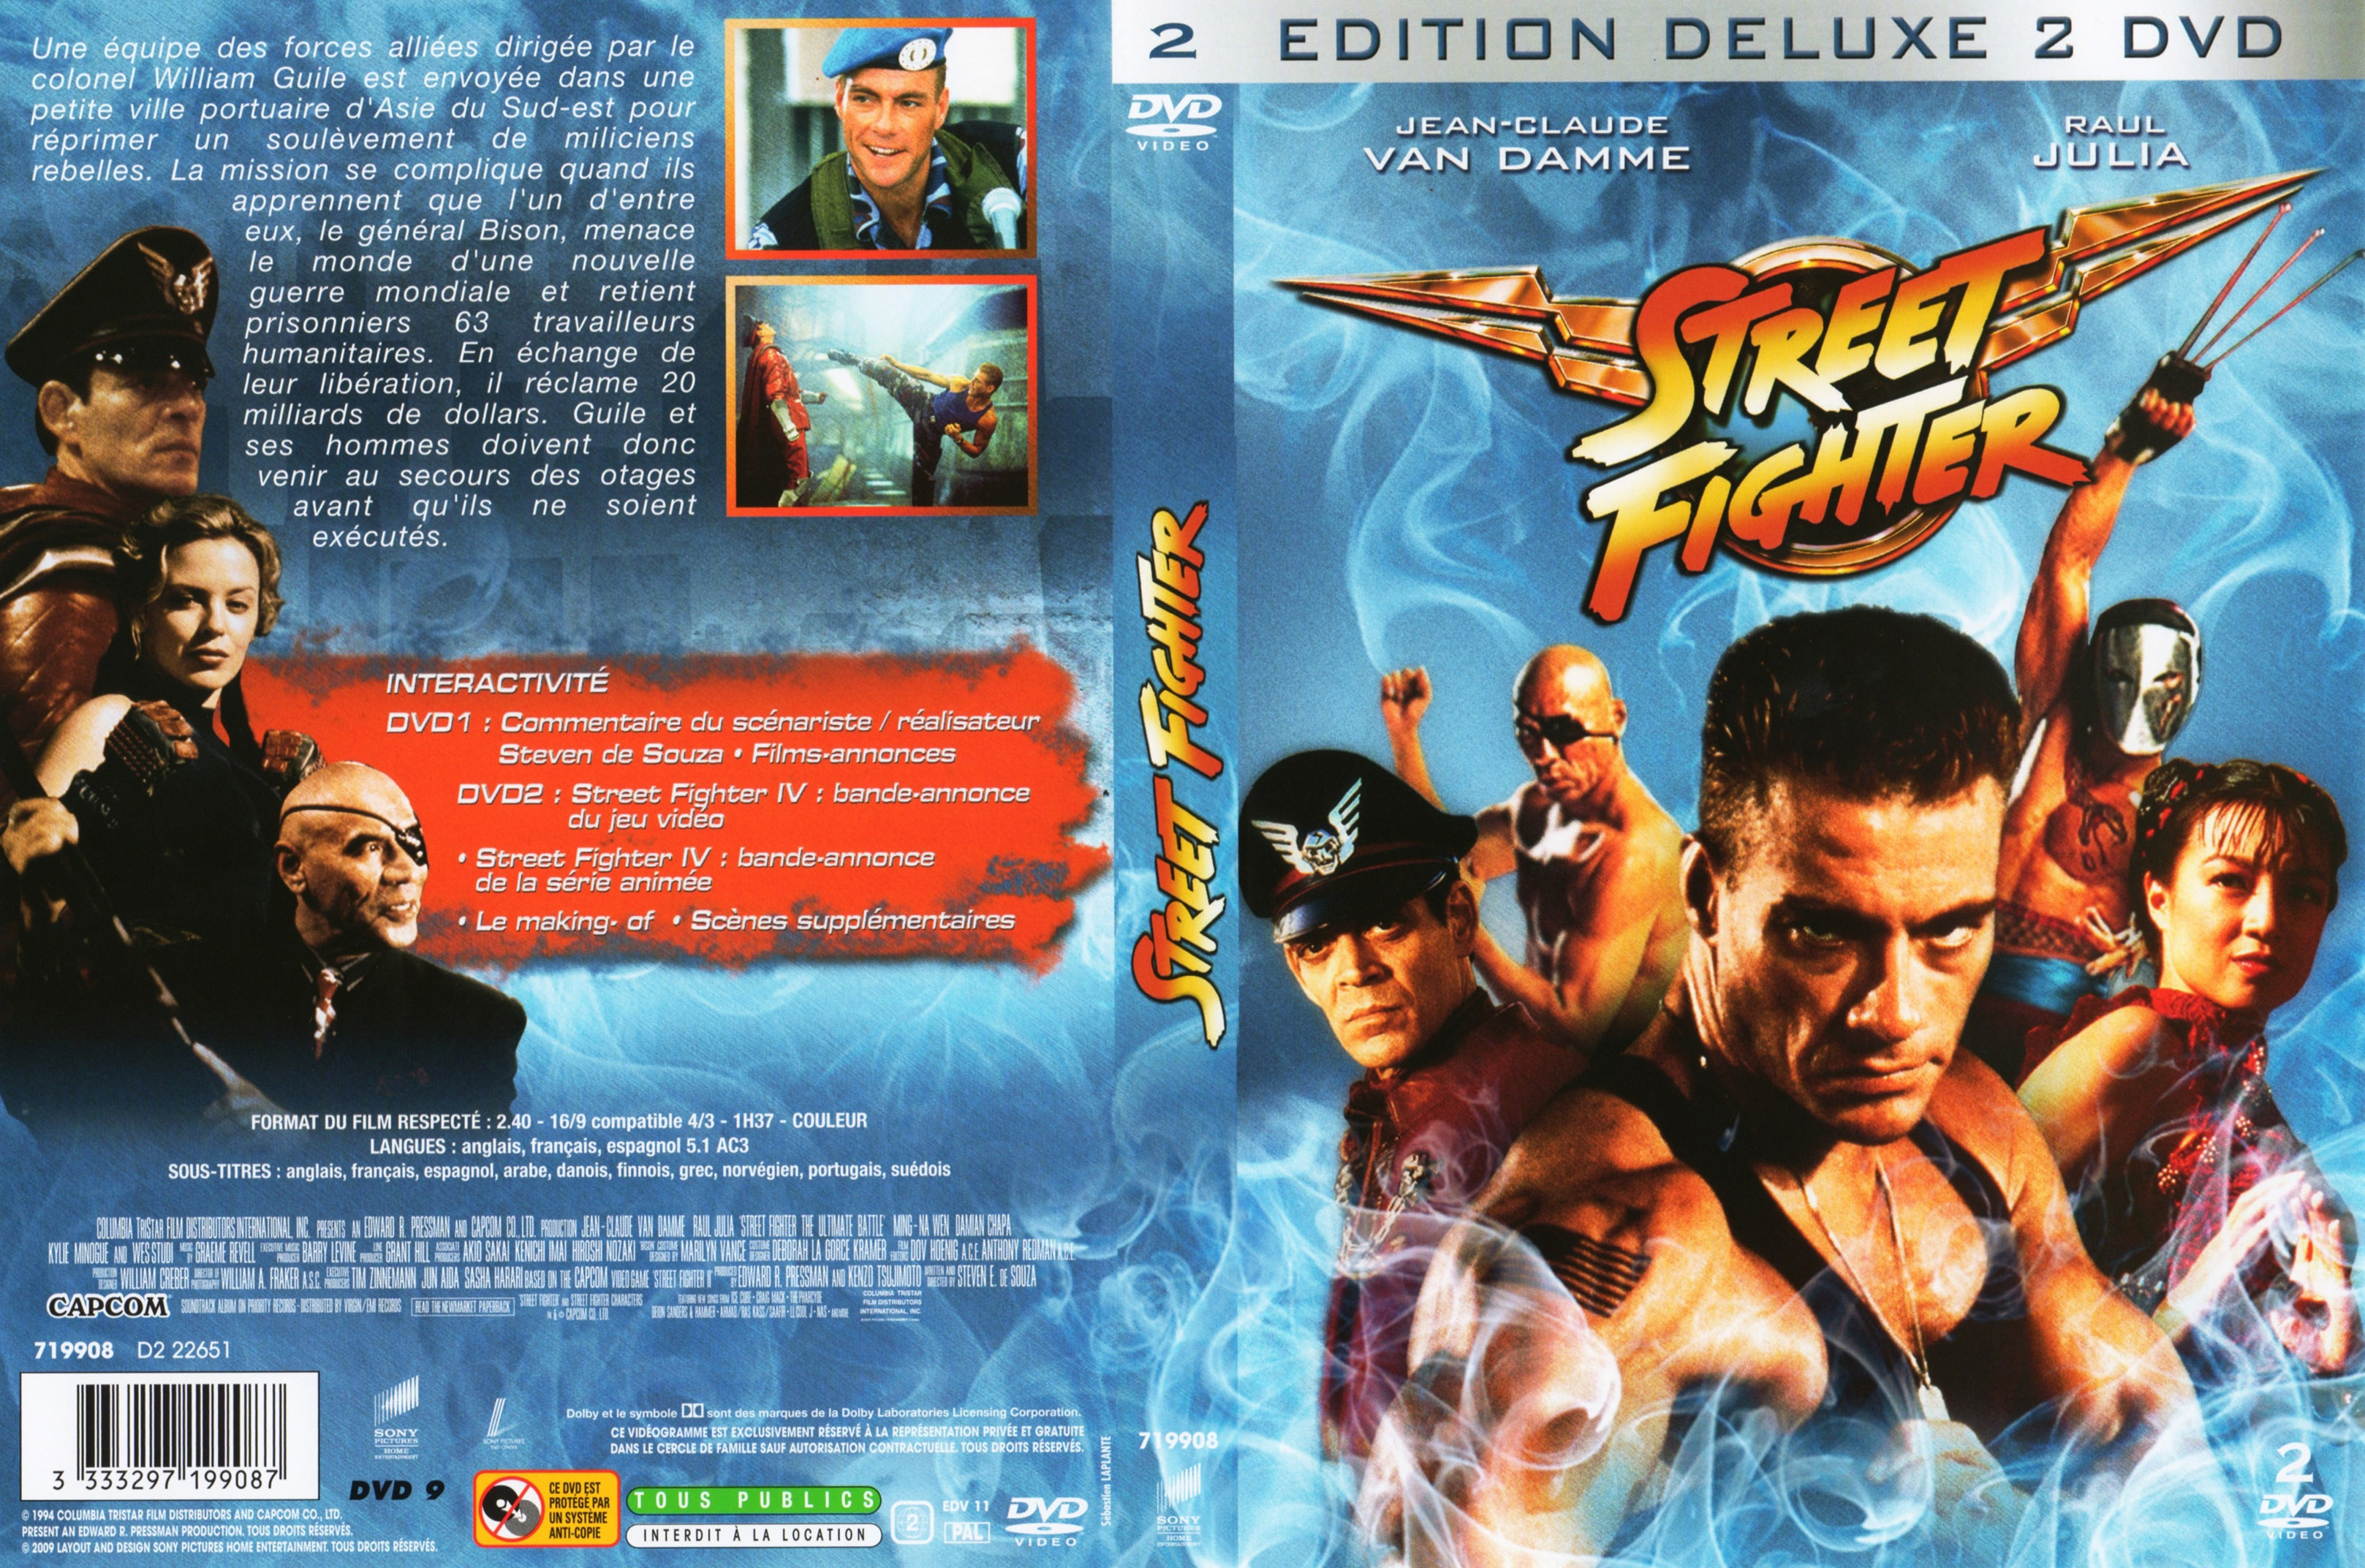 Jaquette DVD Street fighter v5